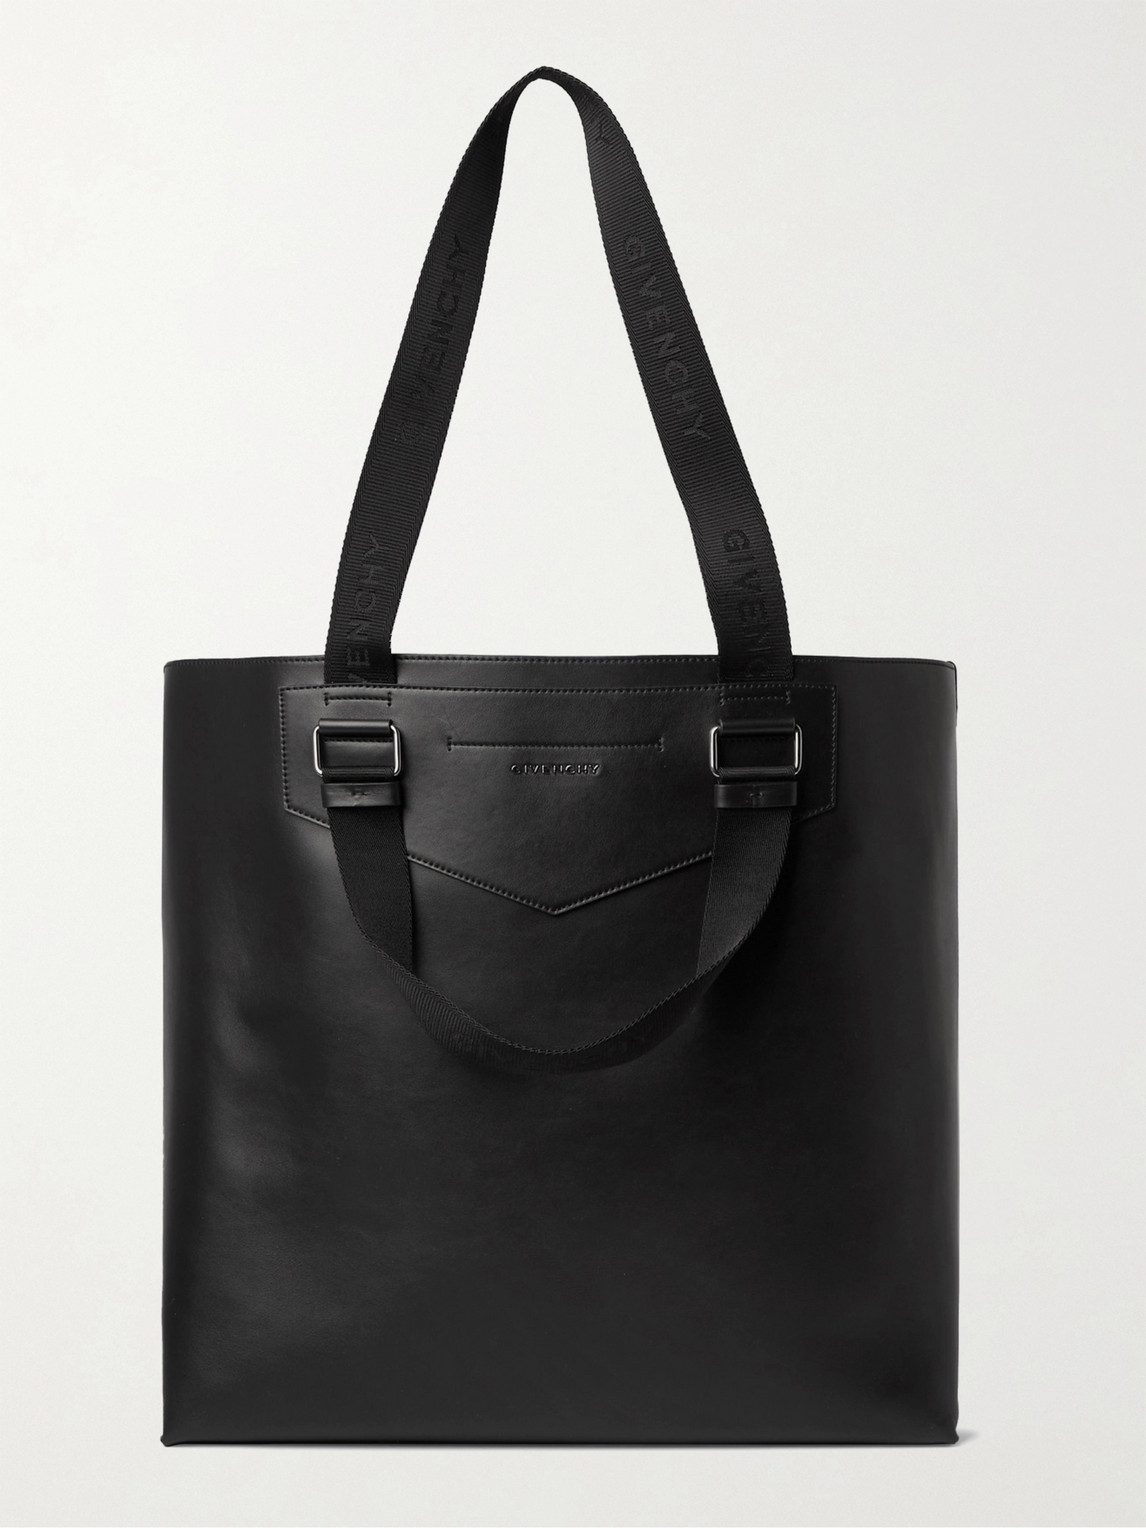 Givenchy Antigona Leather Tote Bag In Black